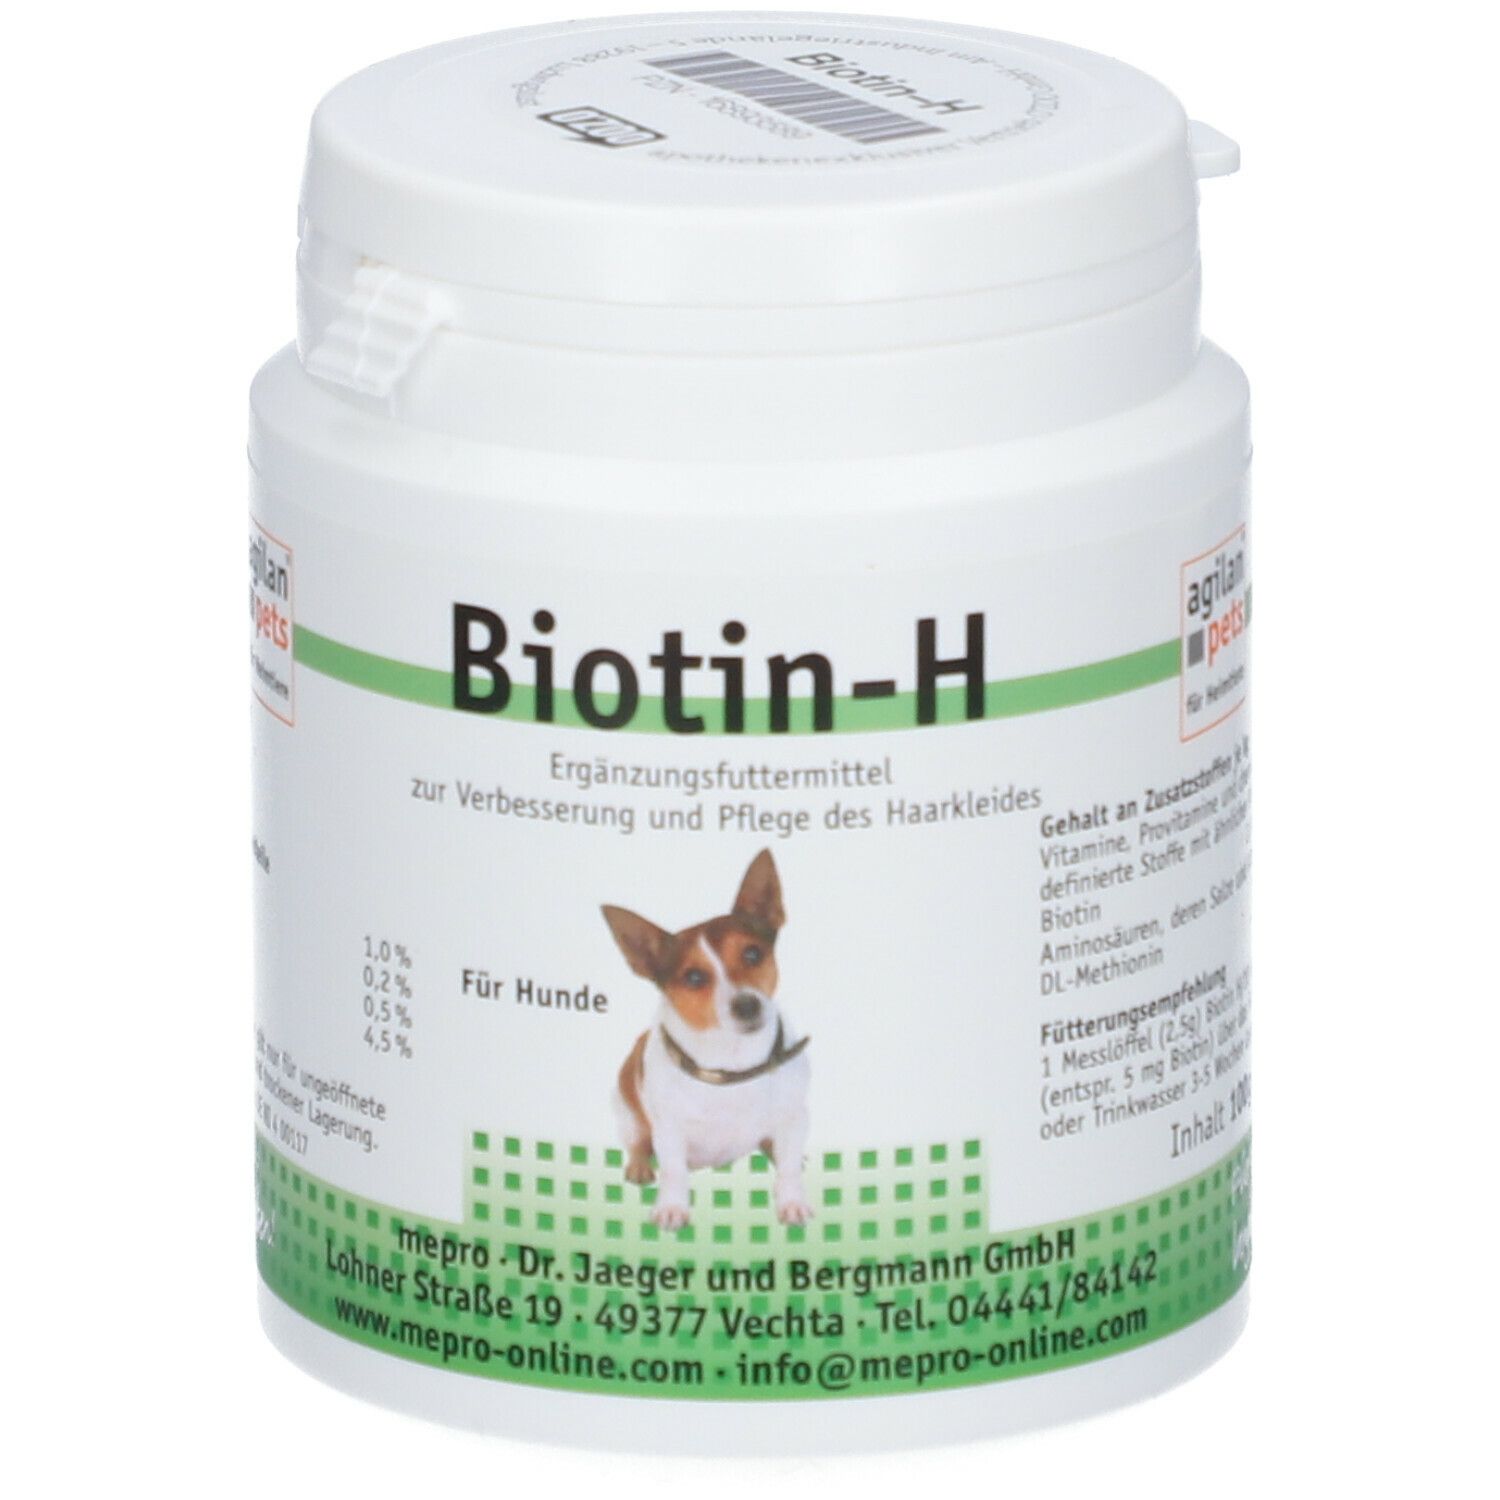 mepro agilan® Biotin-H